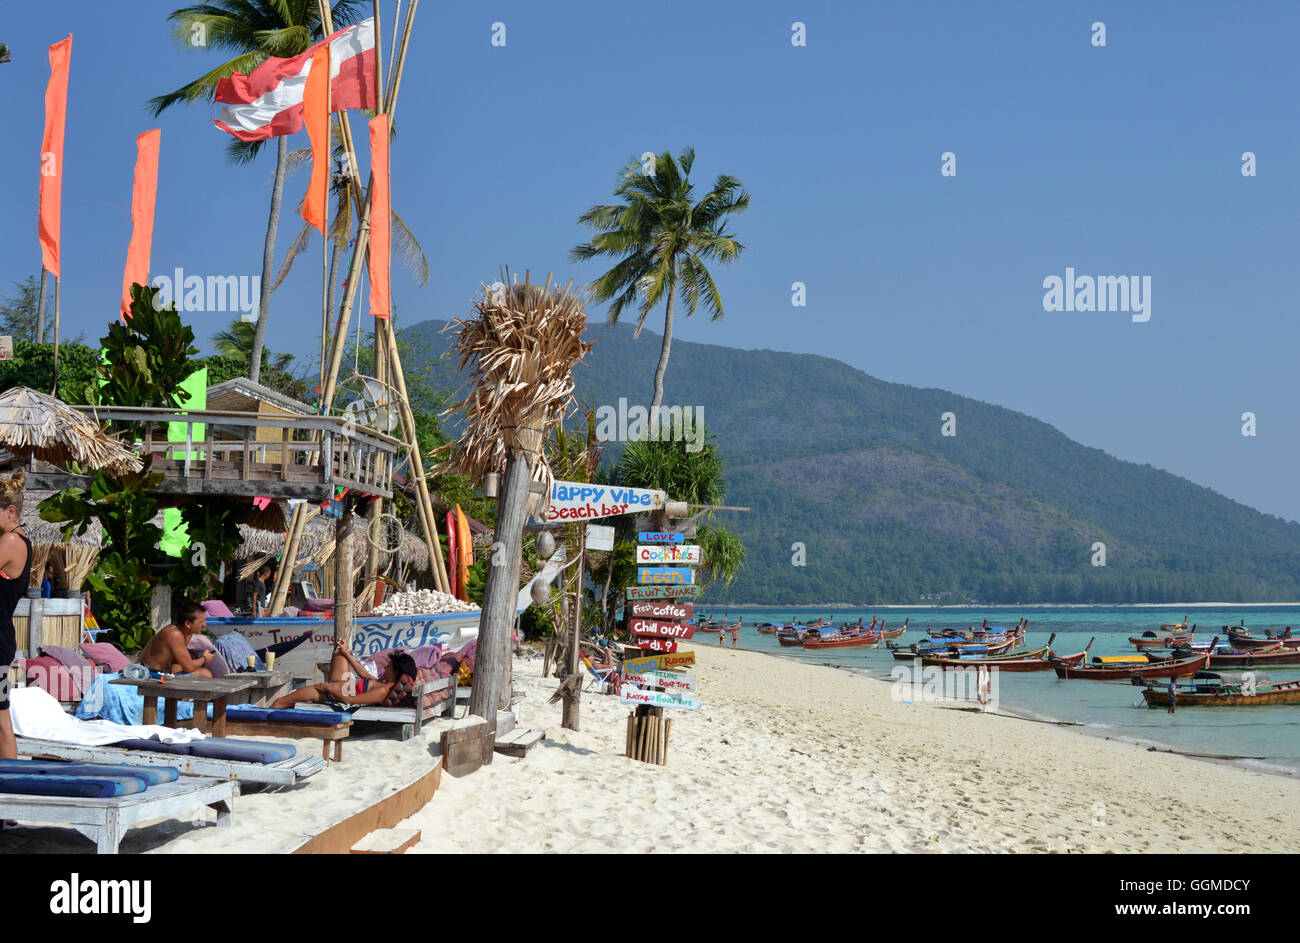 Il Beach bar sull'isola Lipe, sul Mare delle Andamane, Sud- thailandia, tailandia, Asia Foto Stock